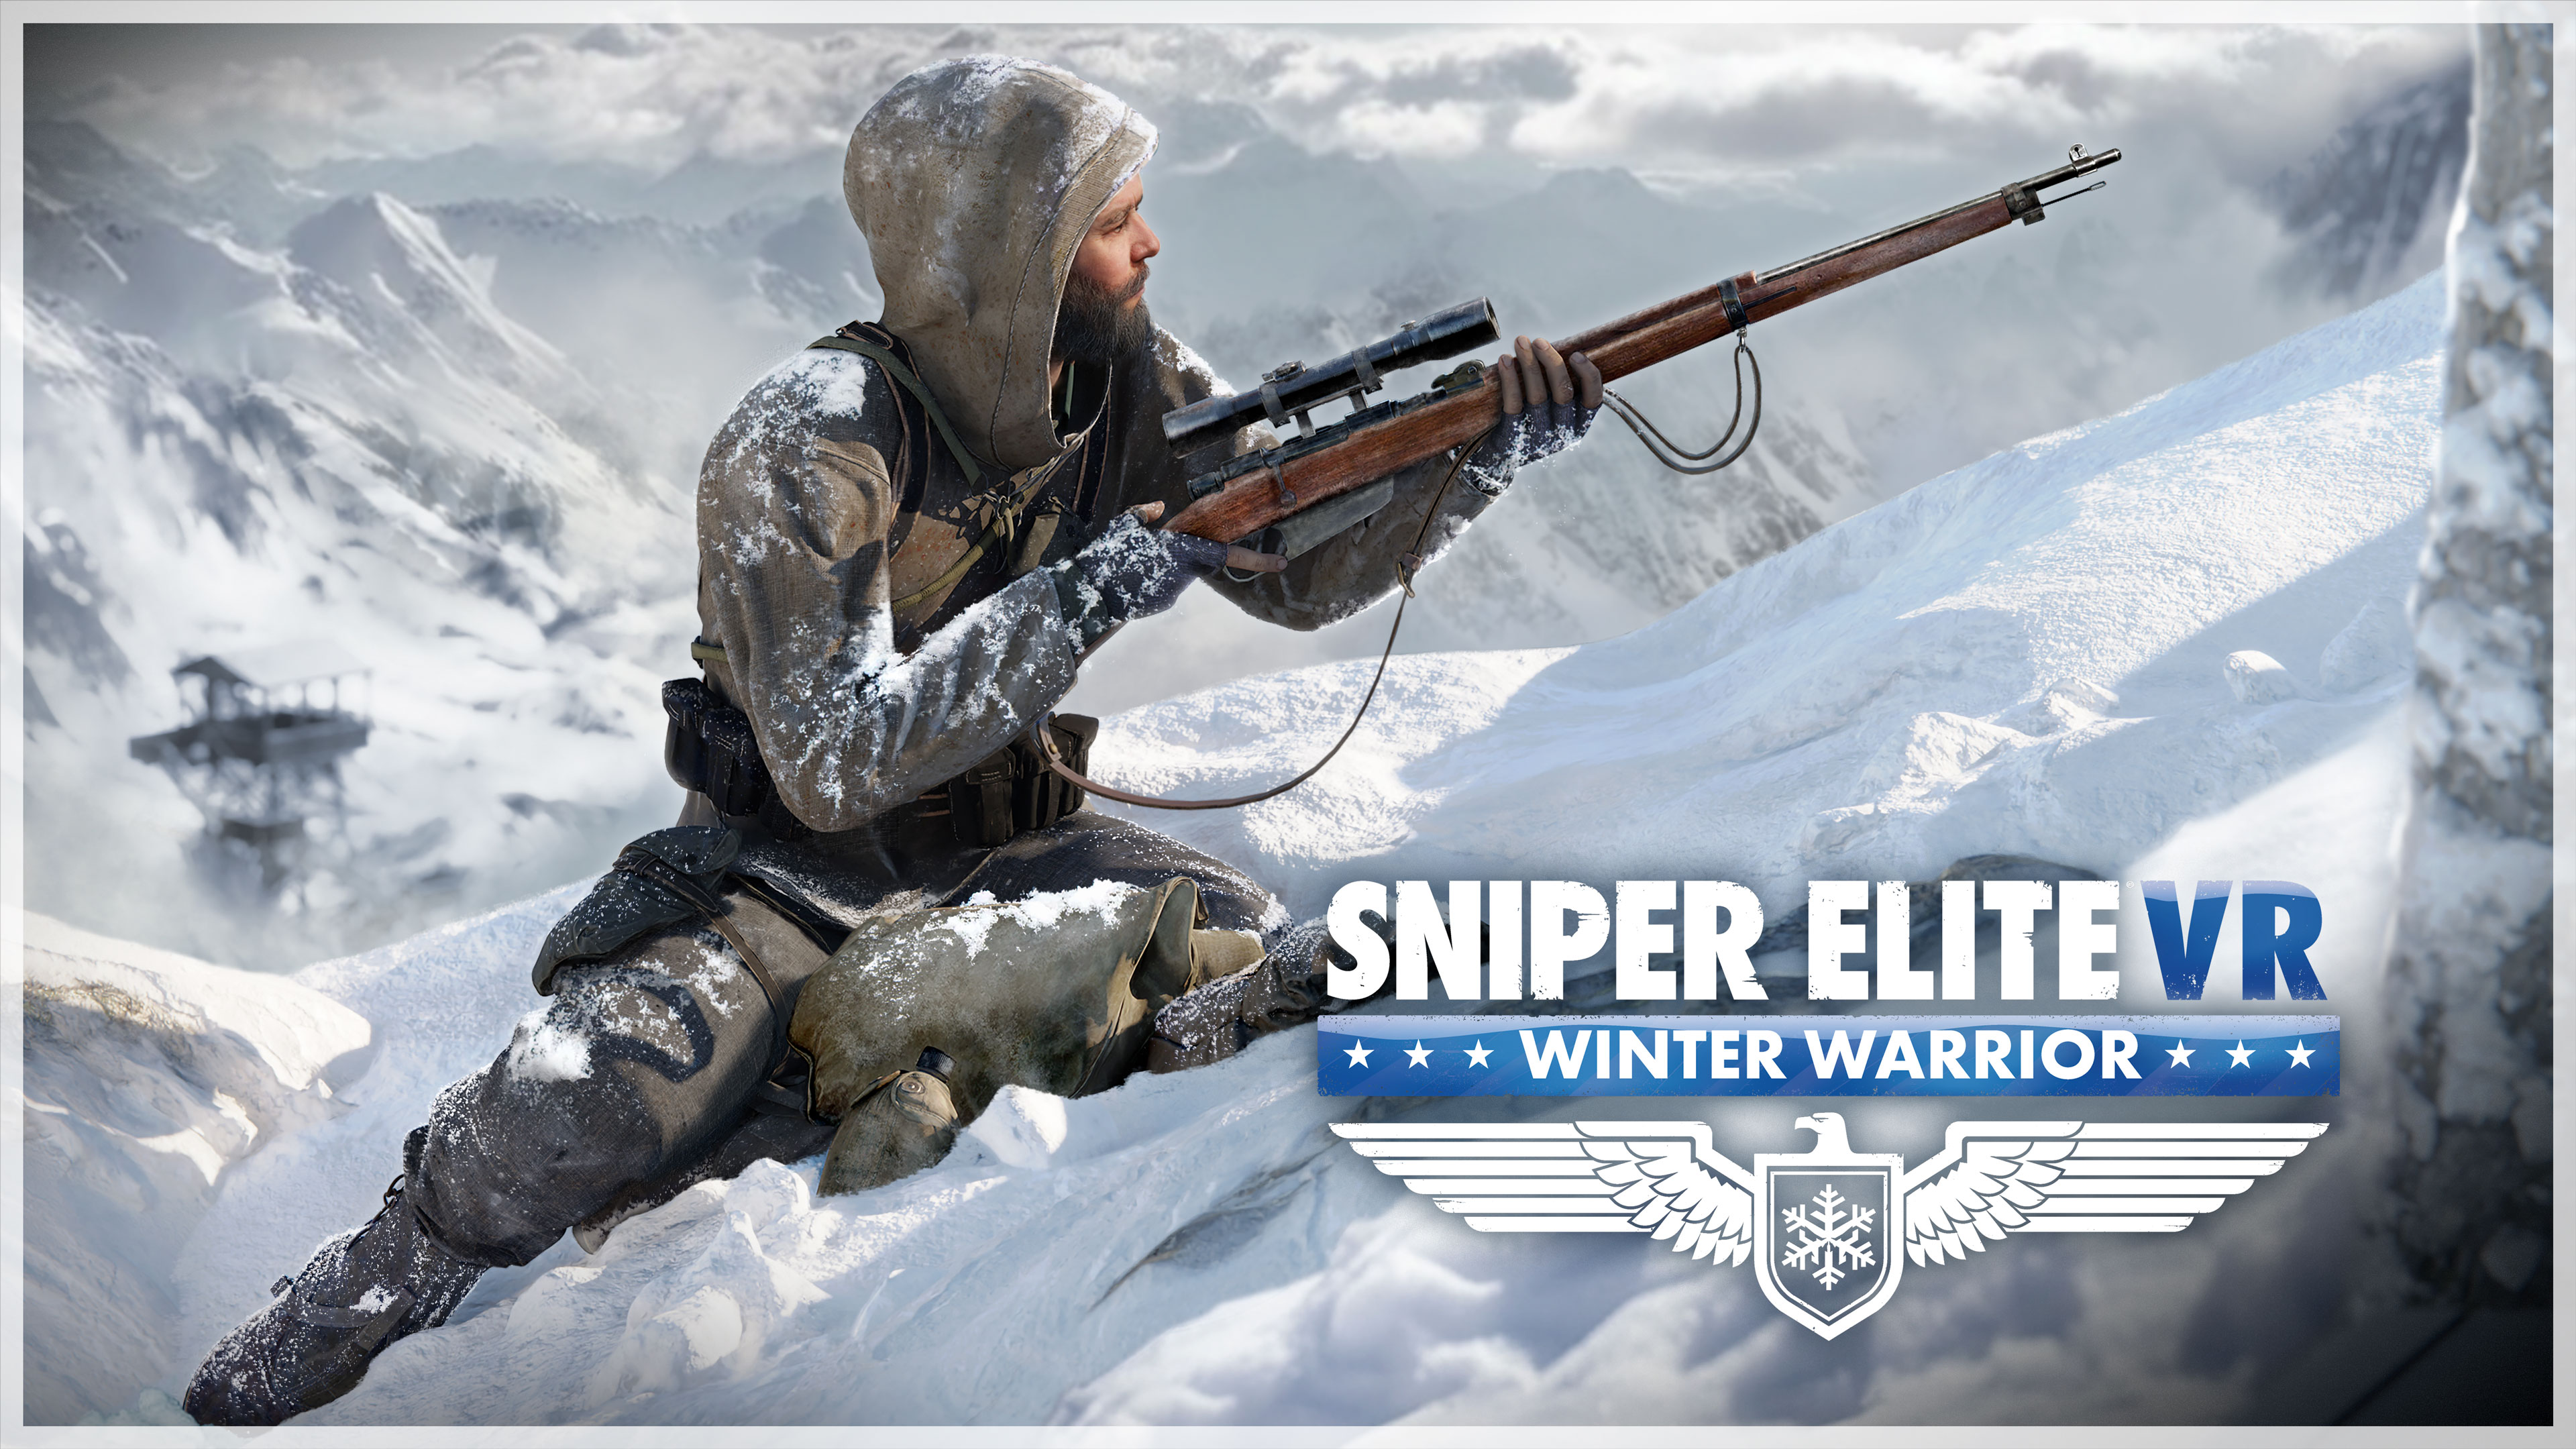 Sniper Elite VR: Winter Warrior - Features Trailer